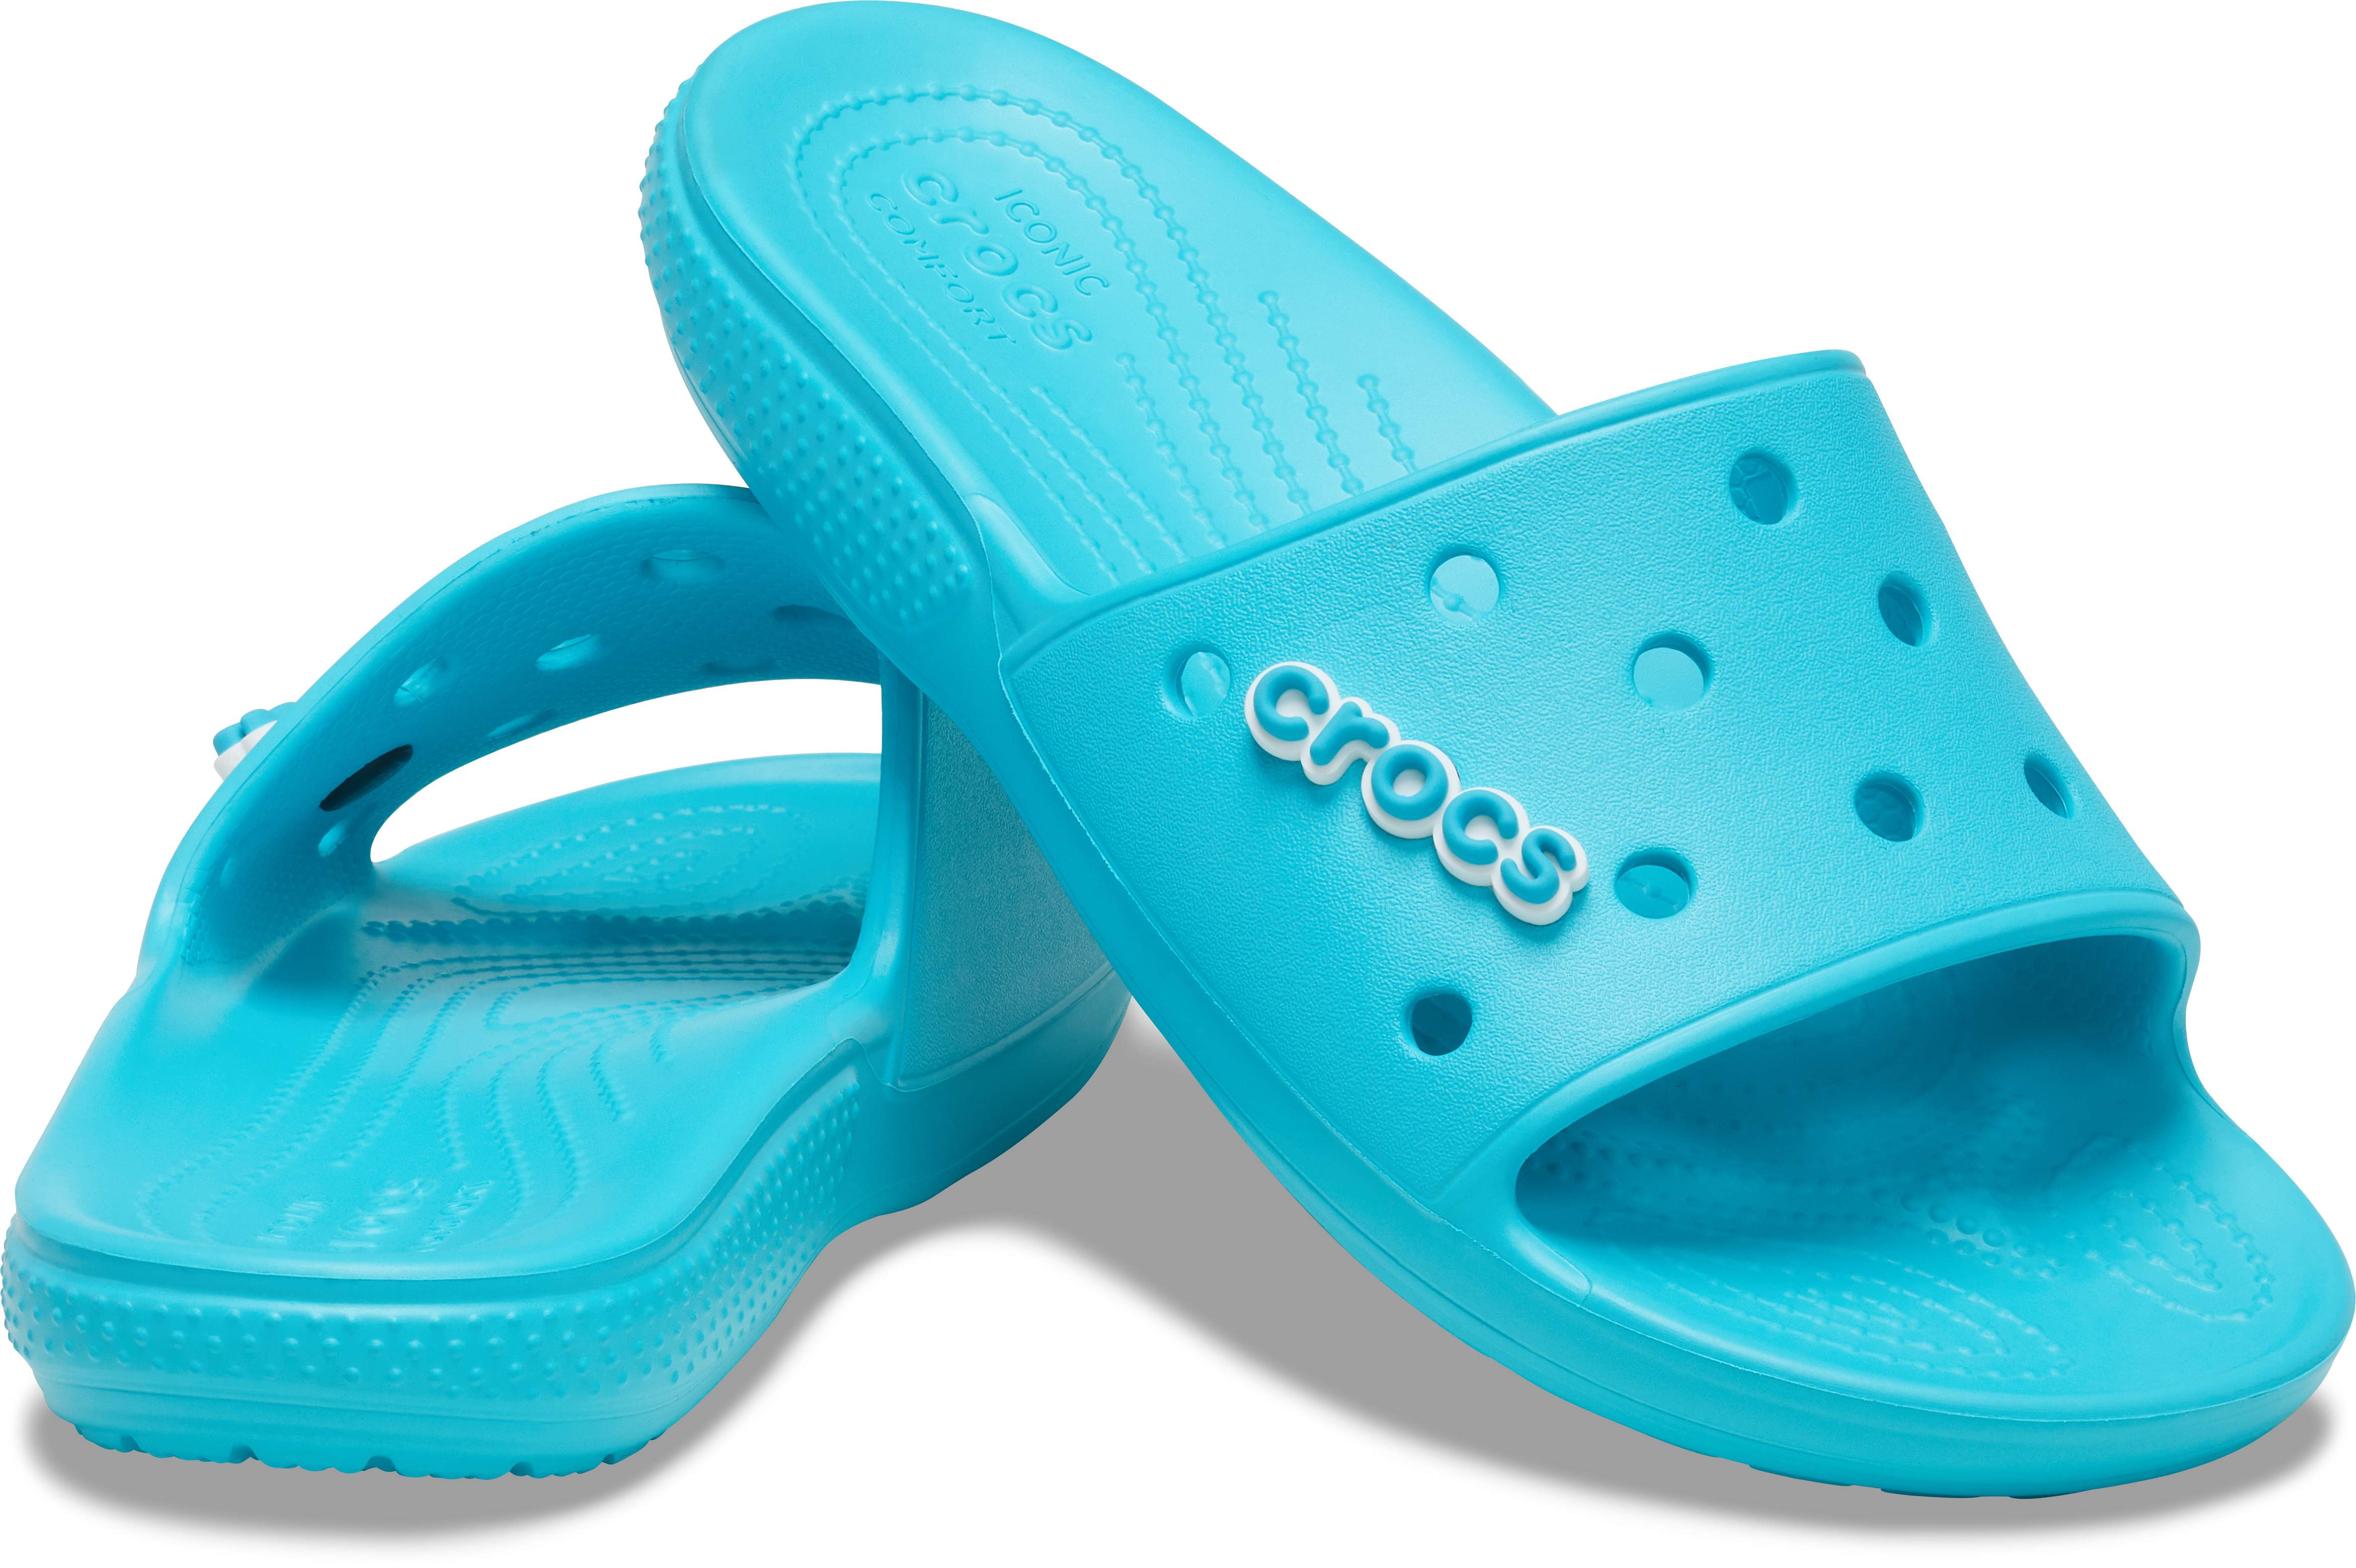 crocs slides on sale